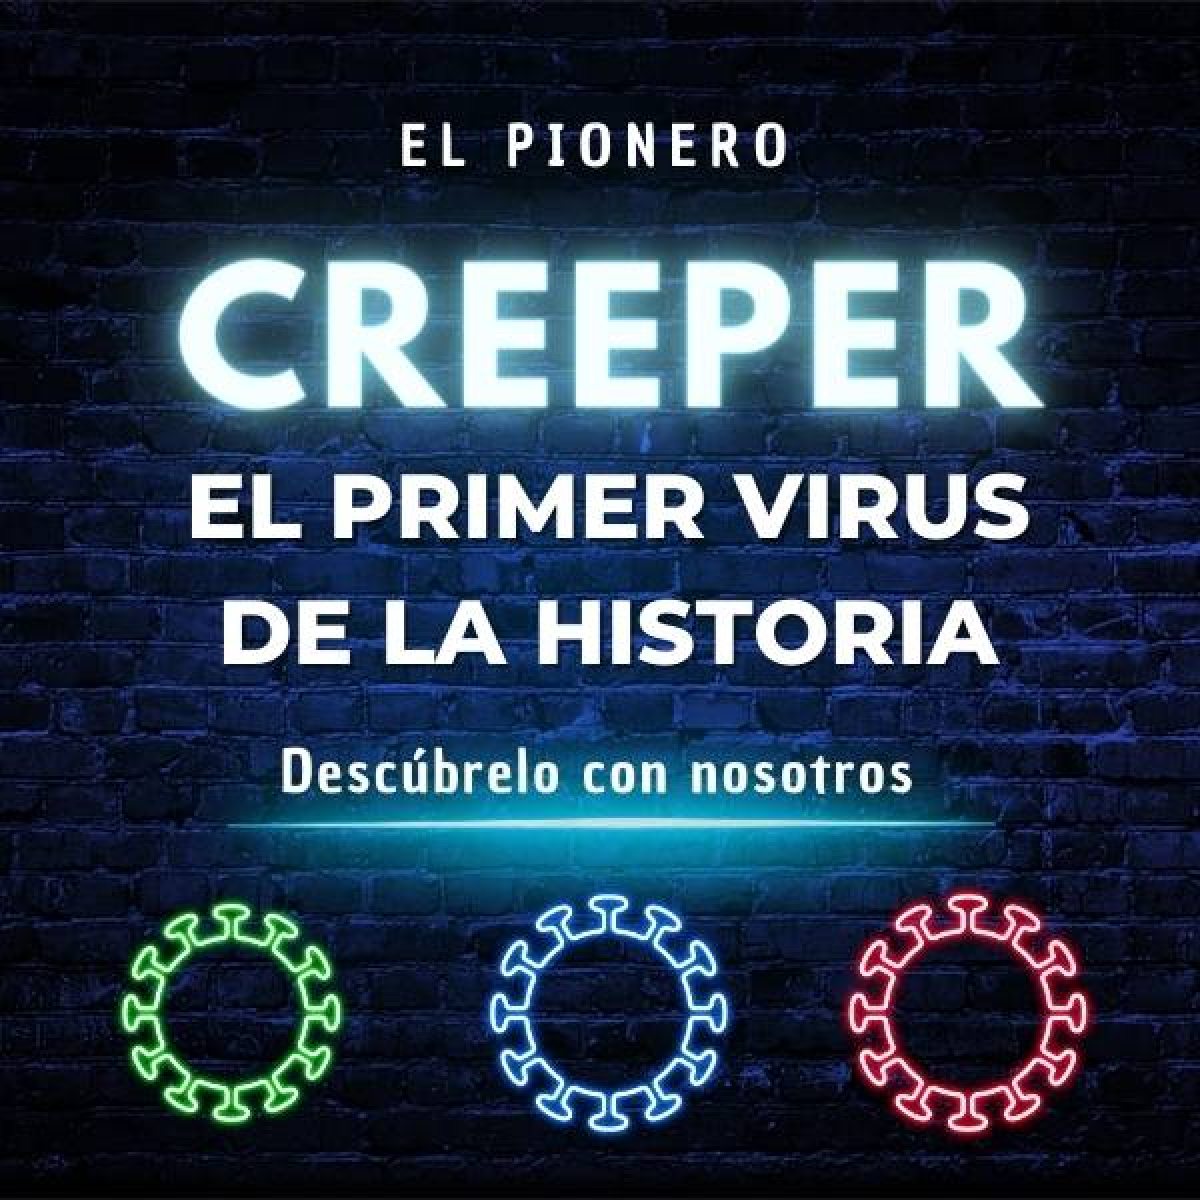 Creeper virus, el primer virus de la historia